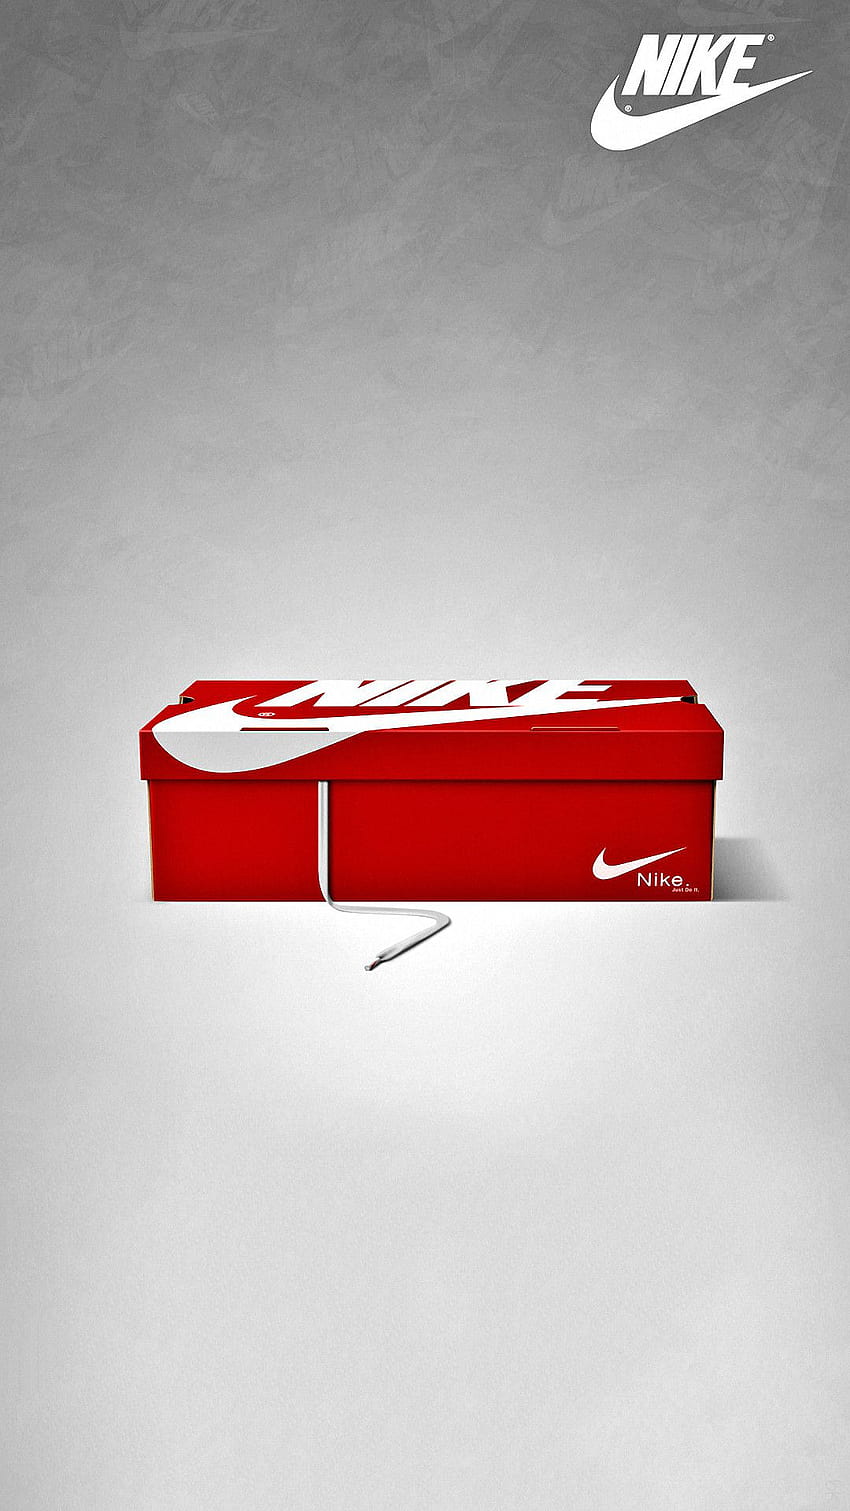 Evaporar Hervir Involucrado Nike iPhone 6, Shoe Box HD phone wallpaper | Pxfuel